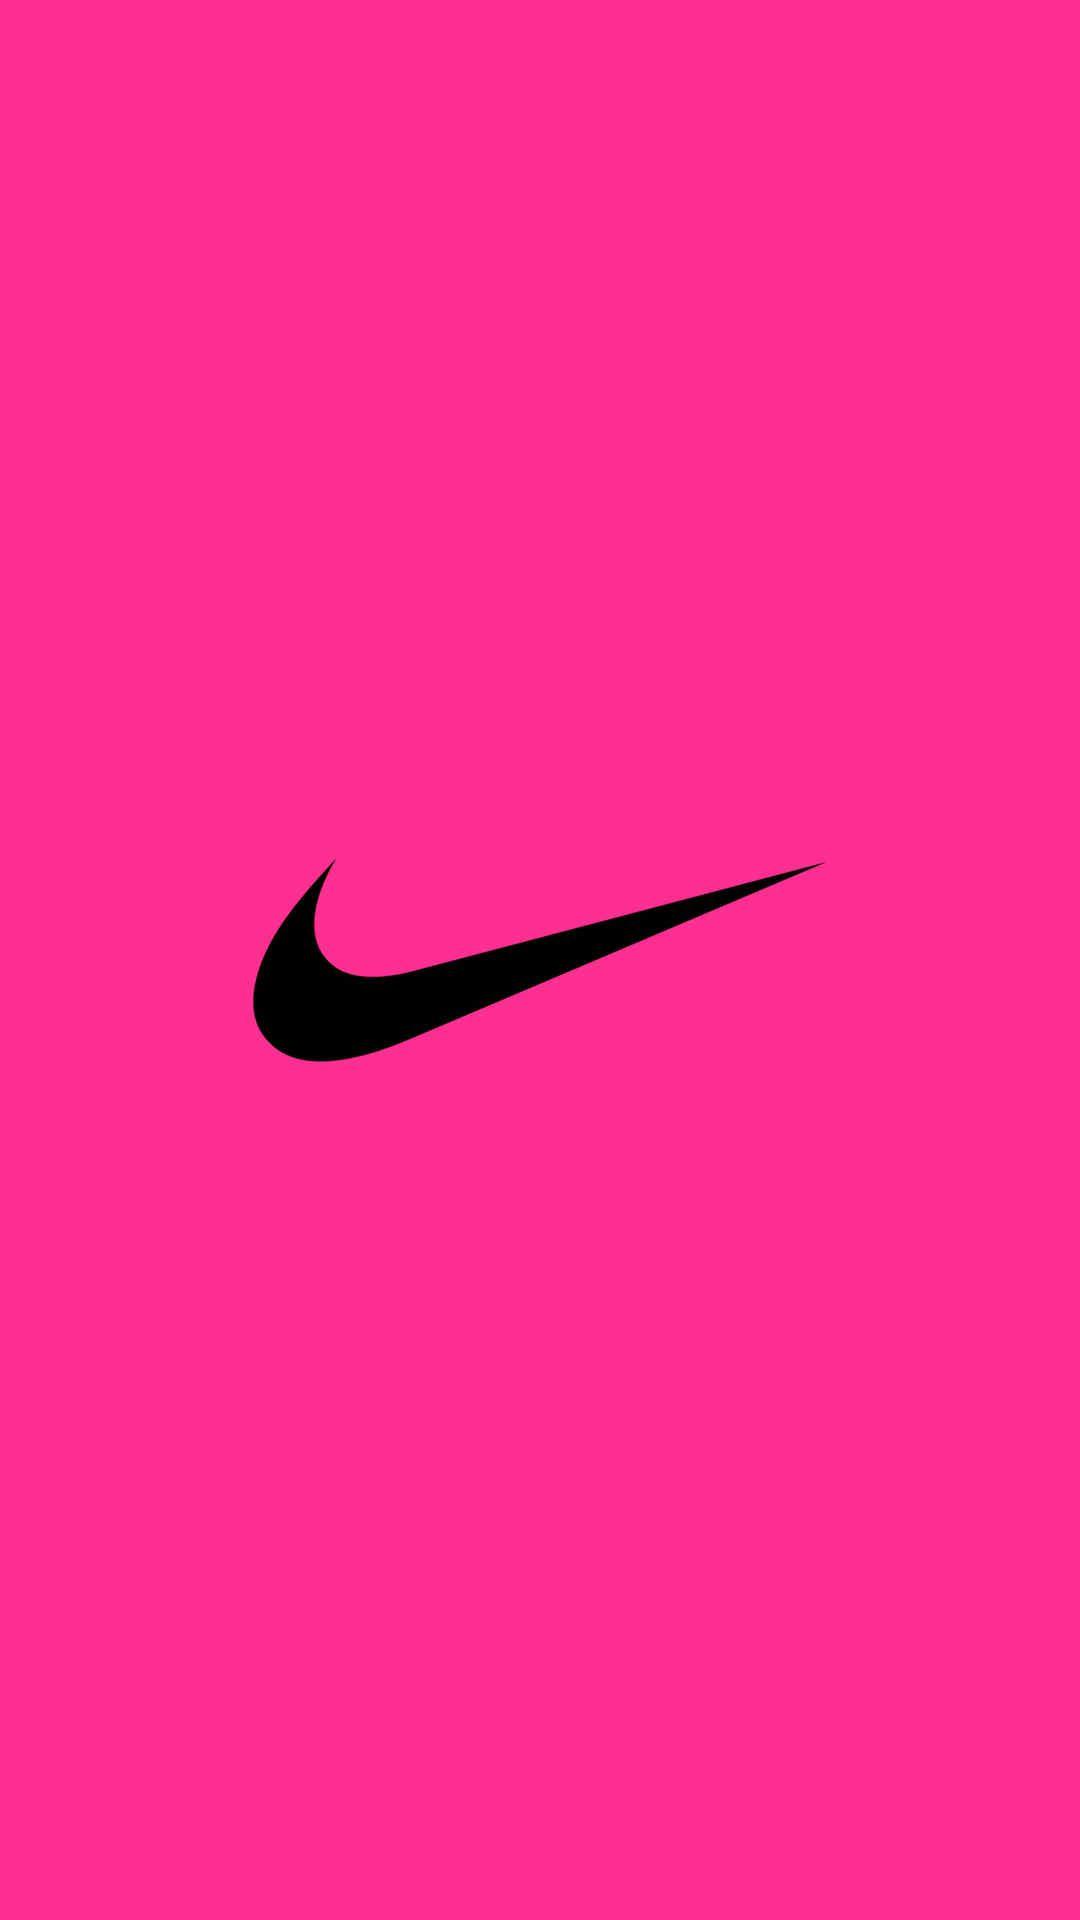 1080 x 1920 · jpeg - NIKE Logo iPhone Wallpaper | Pink nike wallpaper, Nike wallpaper, Nike ...